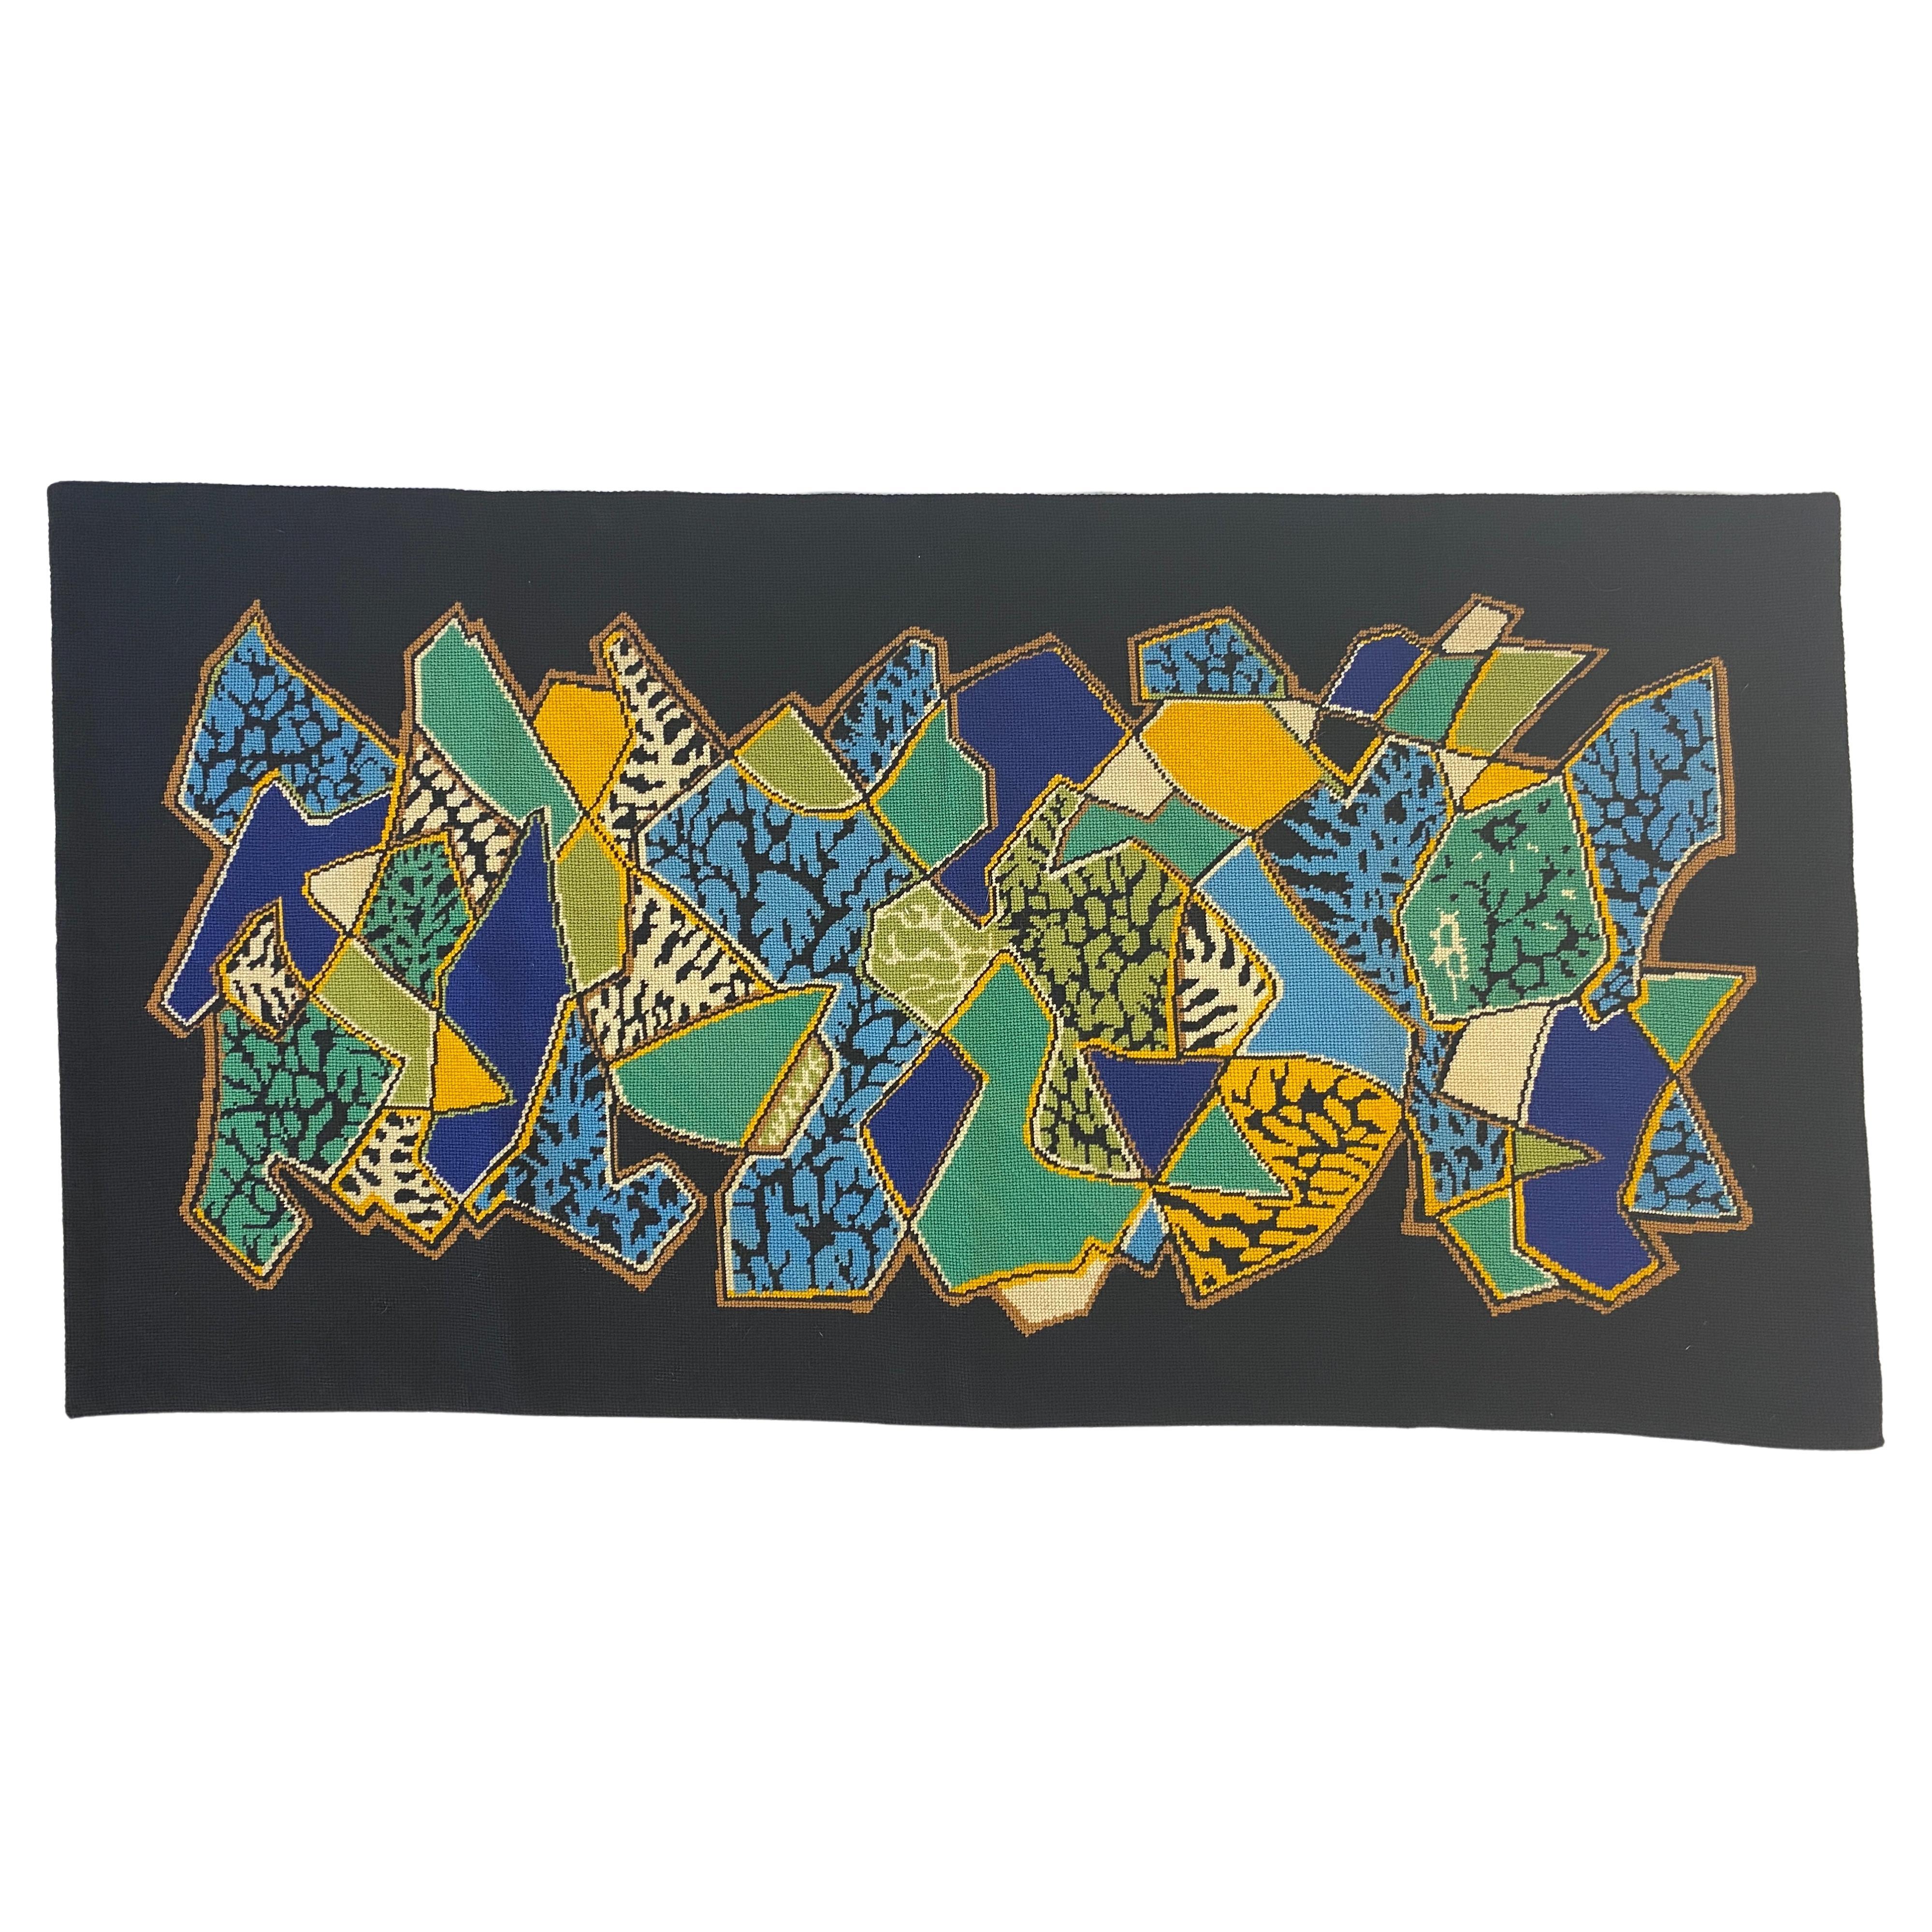 Elie Grekoff - Tapisserie décorative française du milieu du 20e siècle - Art textile